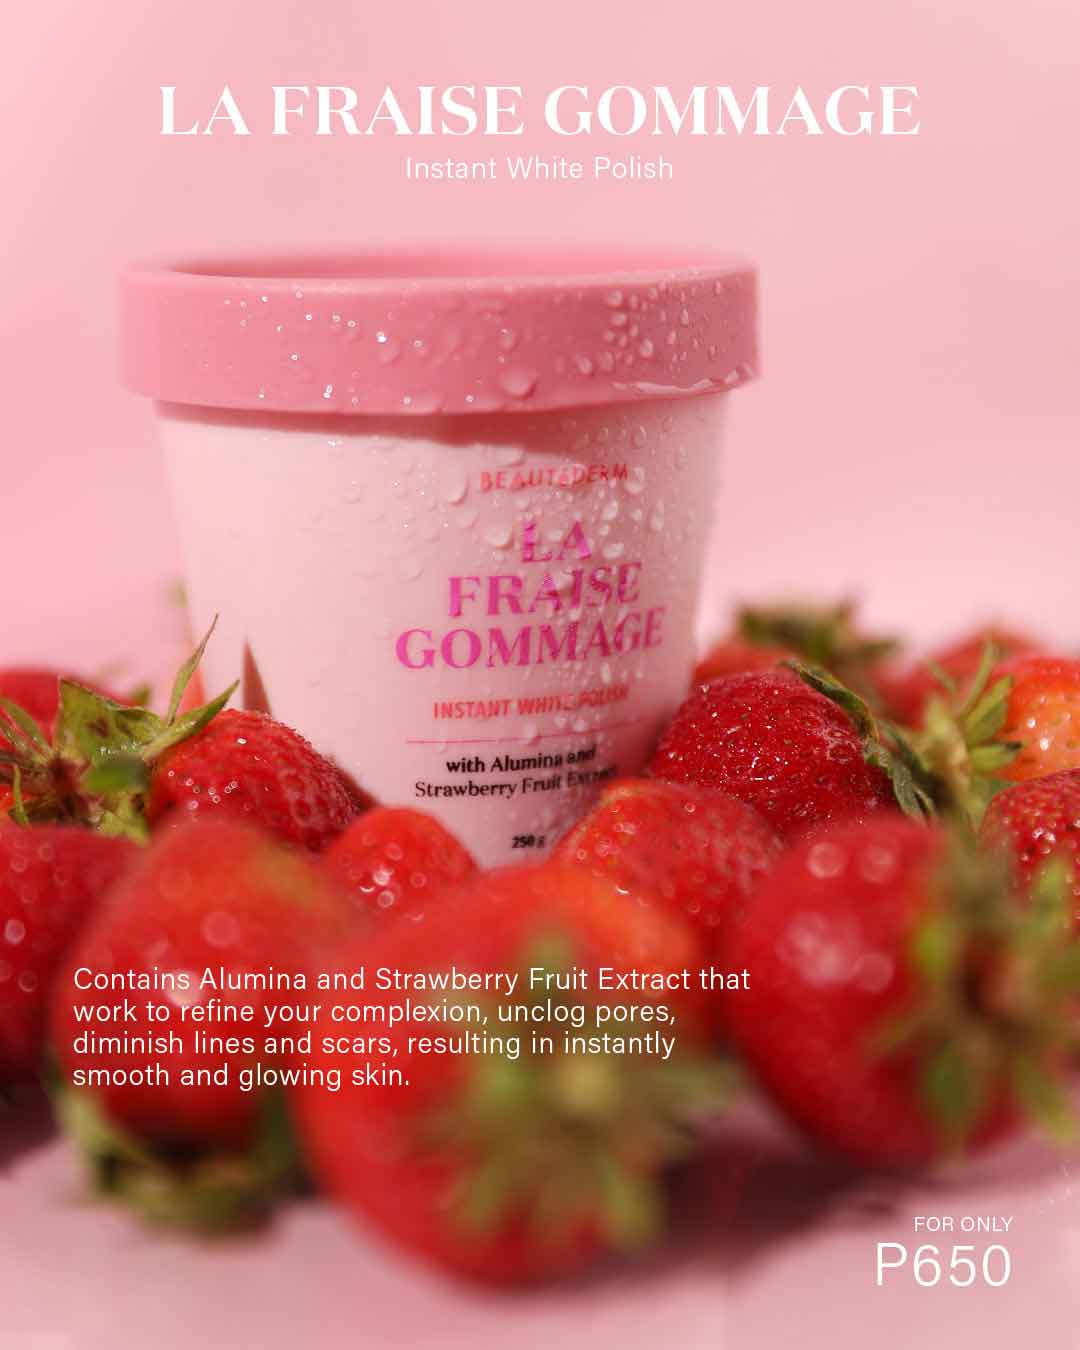 Beautederm La Fraise Gommage, Instant White Polish, with Alumina & Strawberry Fruit Extract, 250g